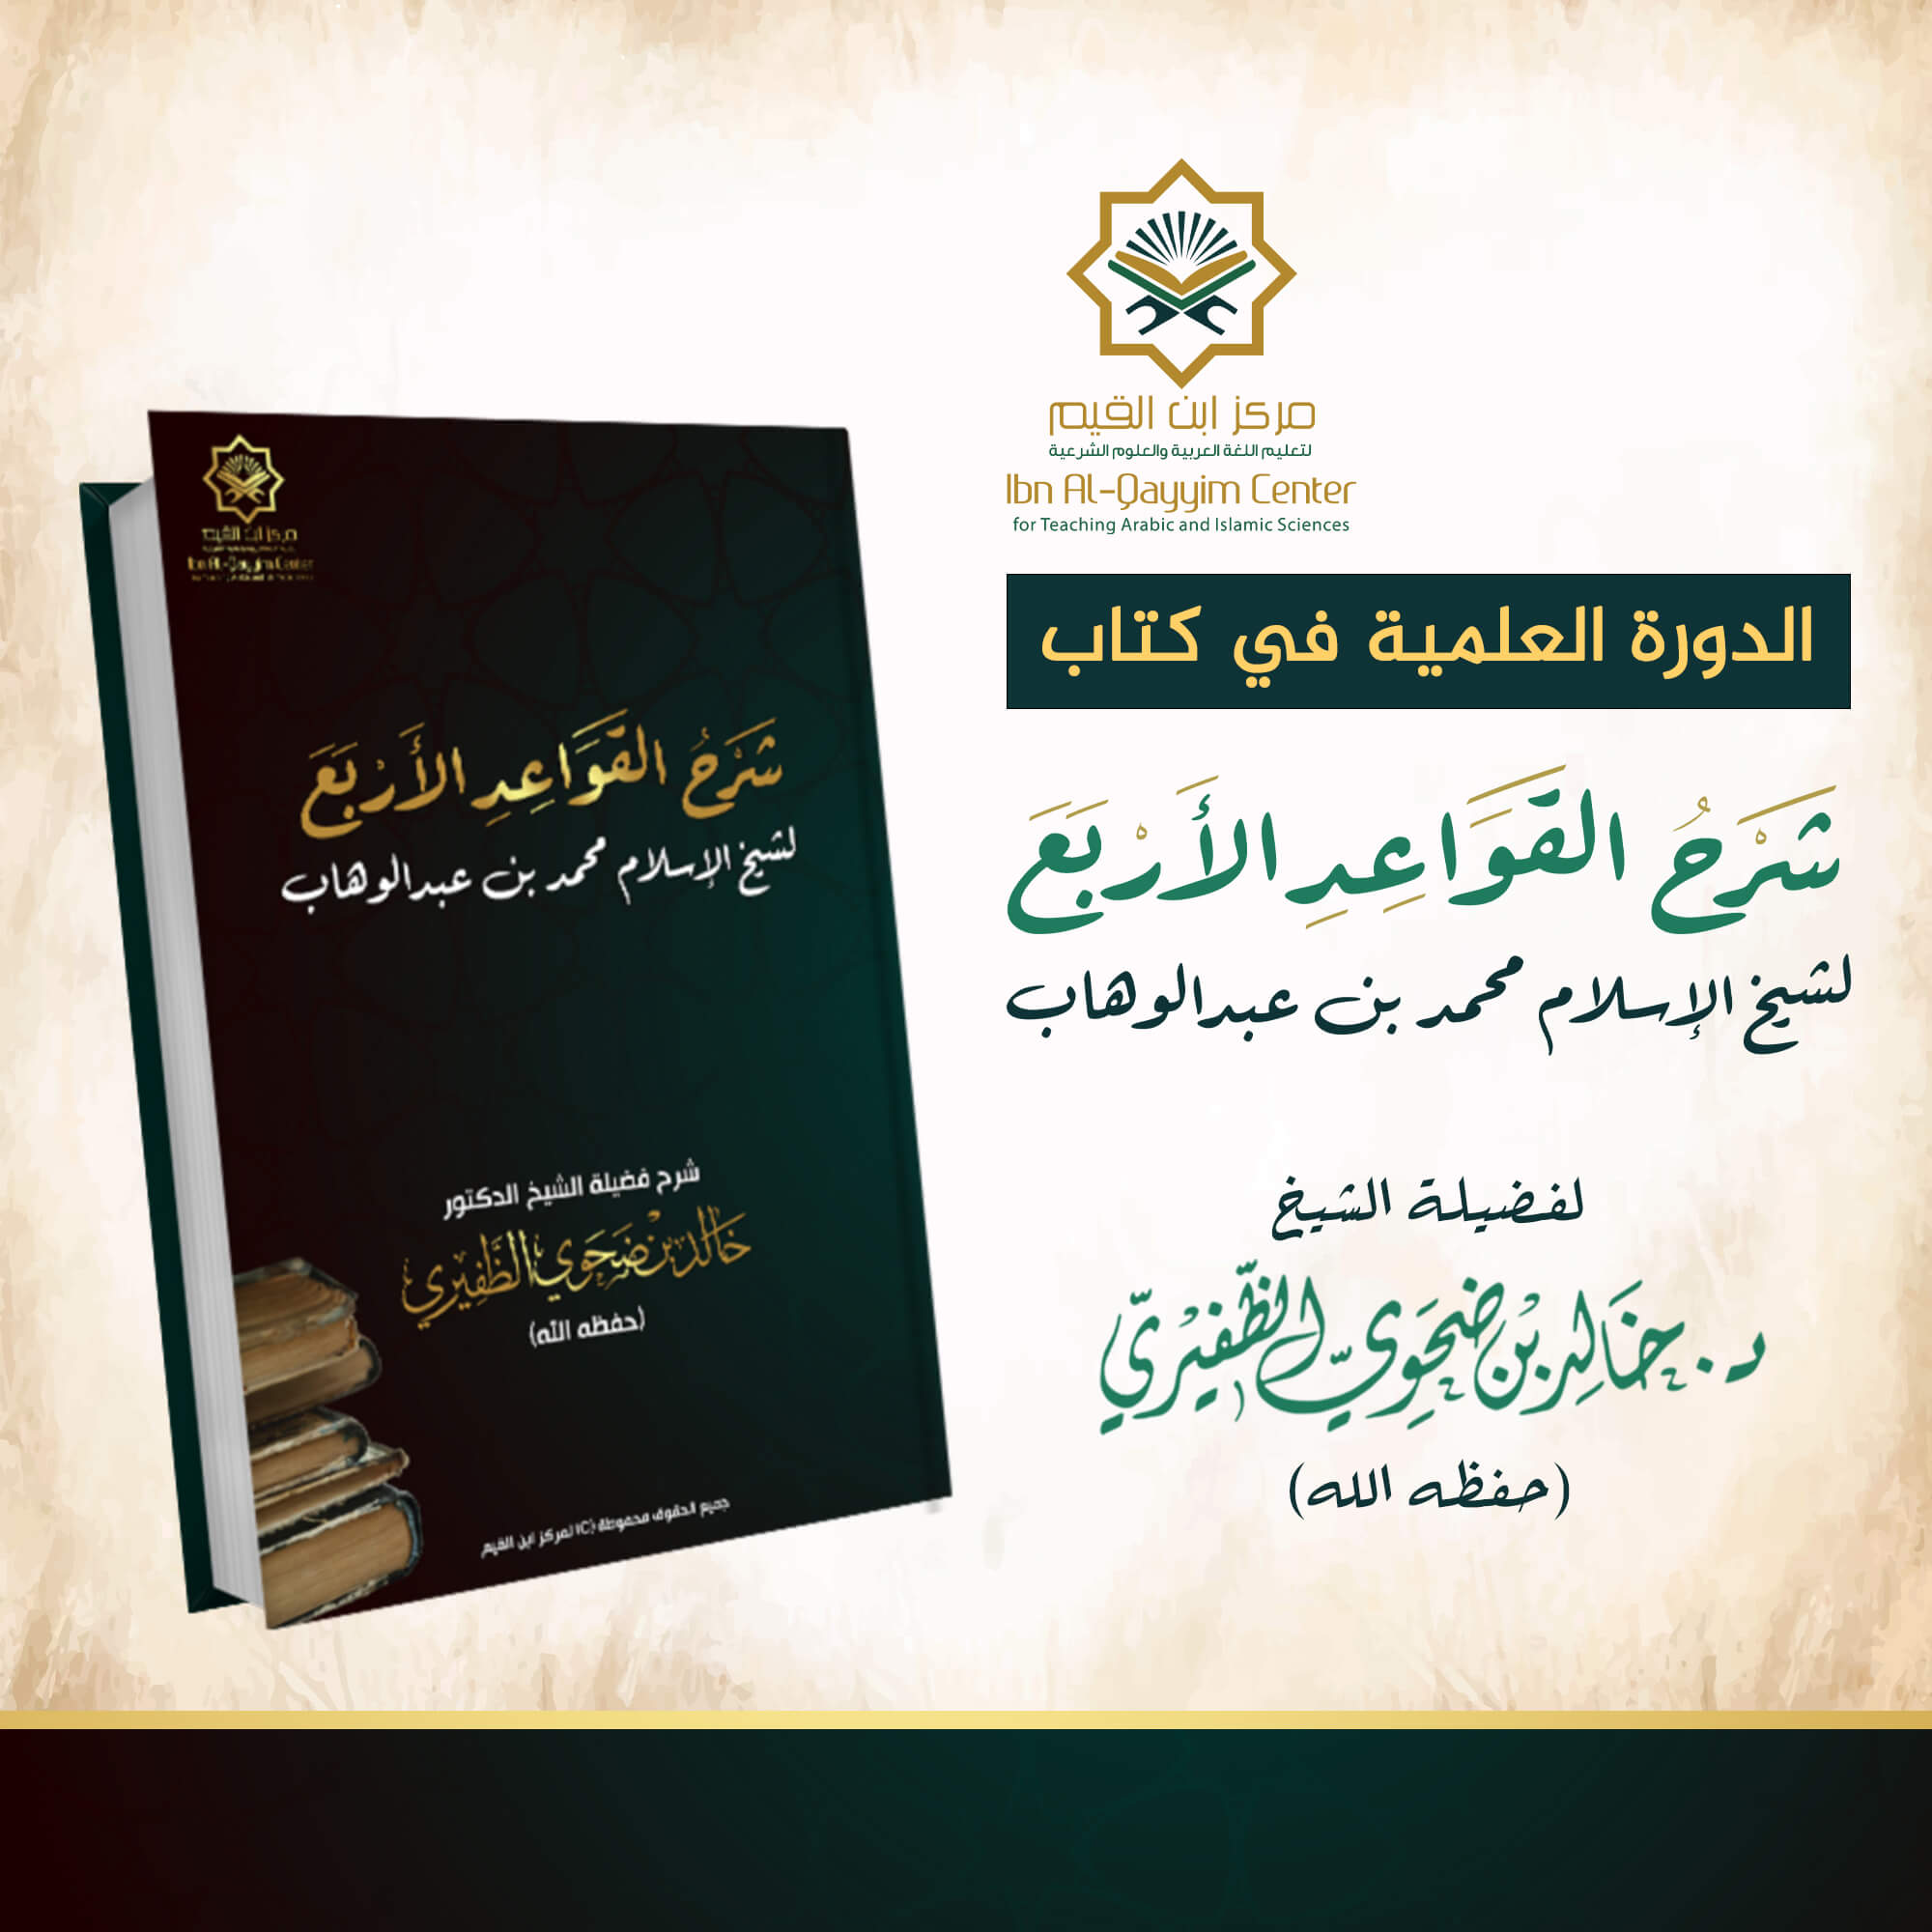 الدورة العلمية مع الإجازة في شرح القواعد الأربع للإمام محمد بن عبدالوهاب